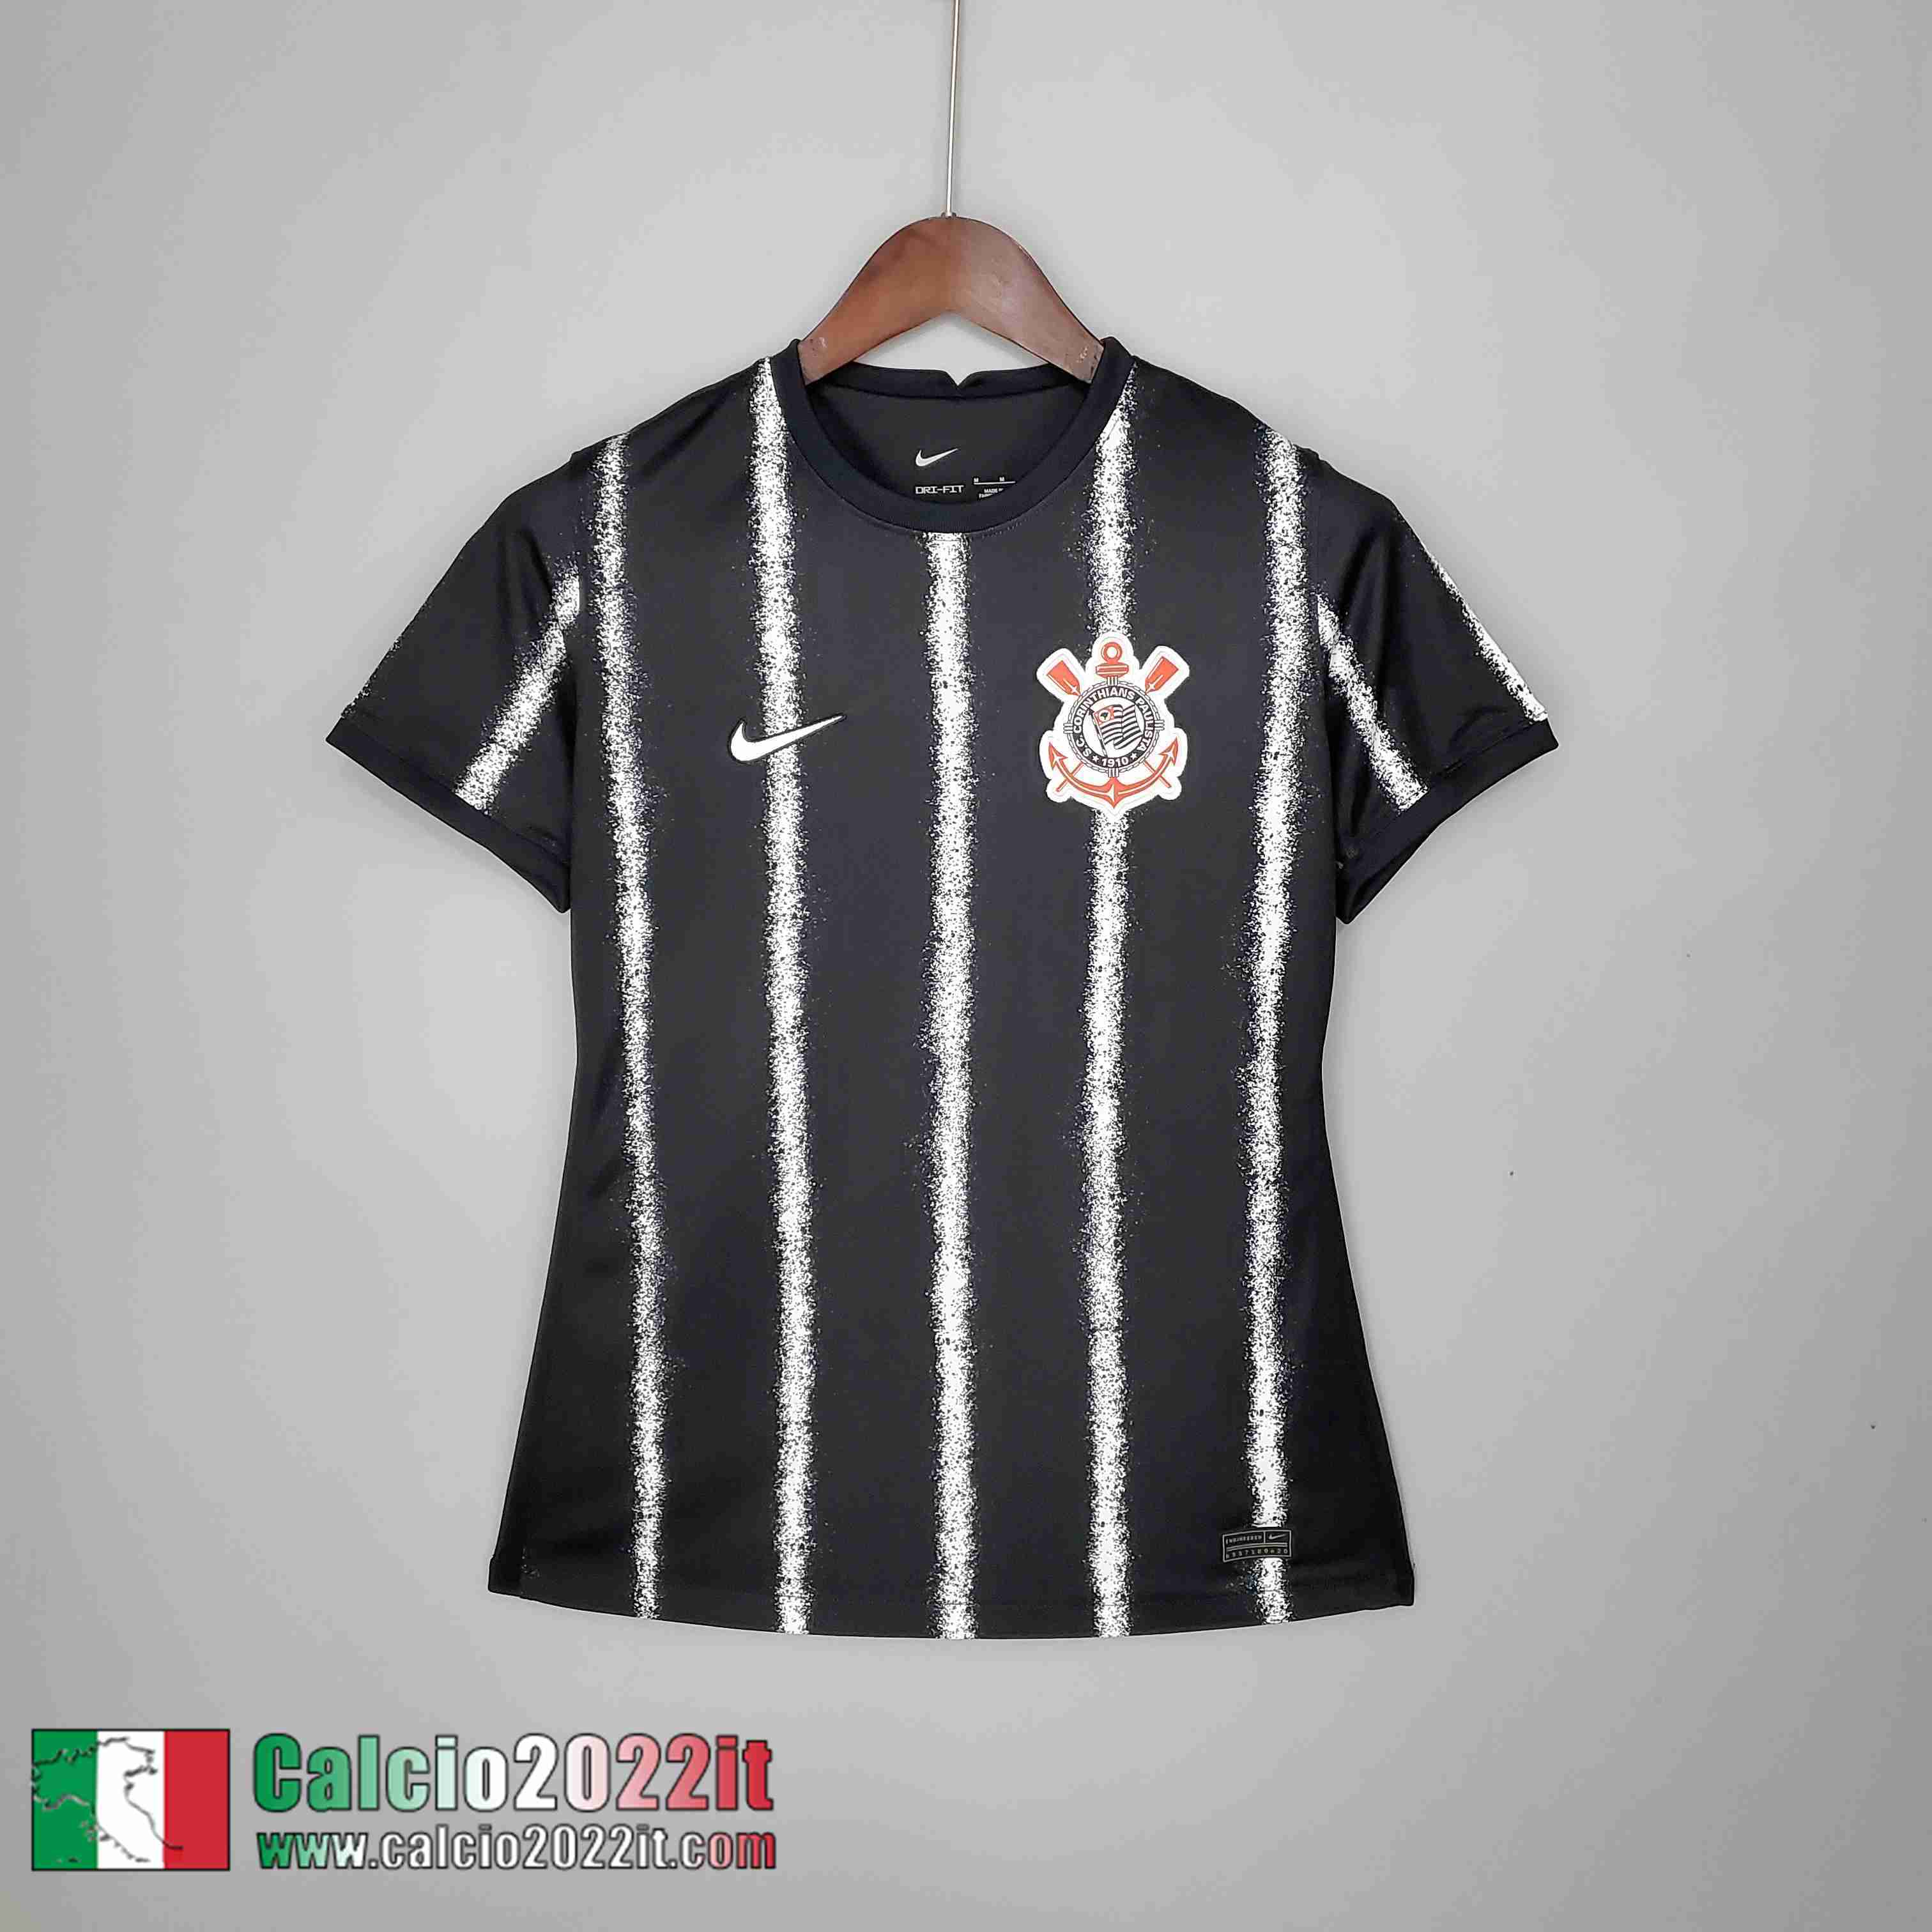 Seconda Corinthians Maglia Calcio Donna Donna 2021 2022